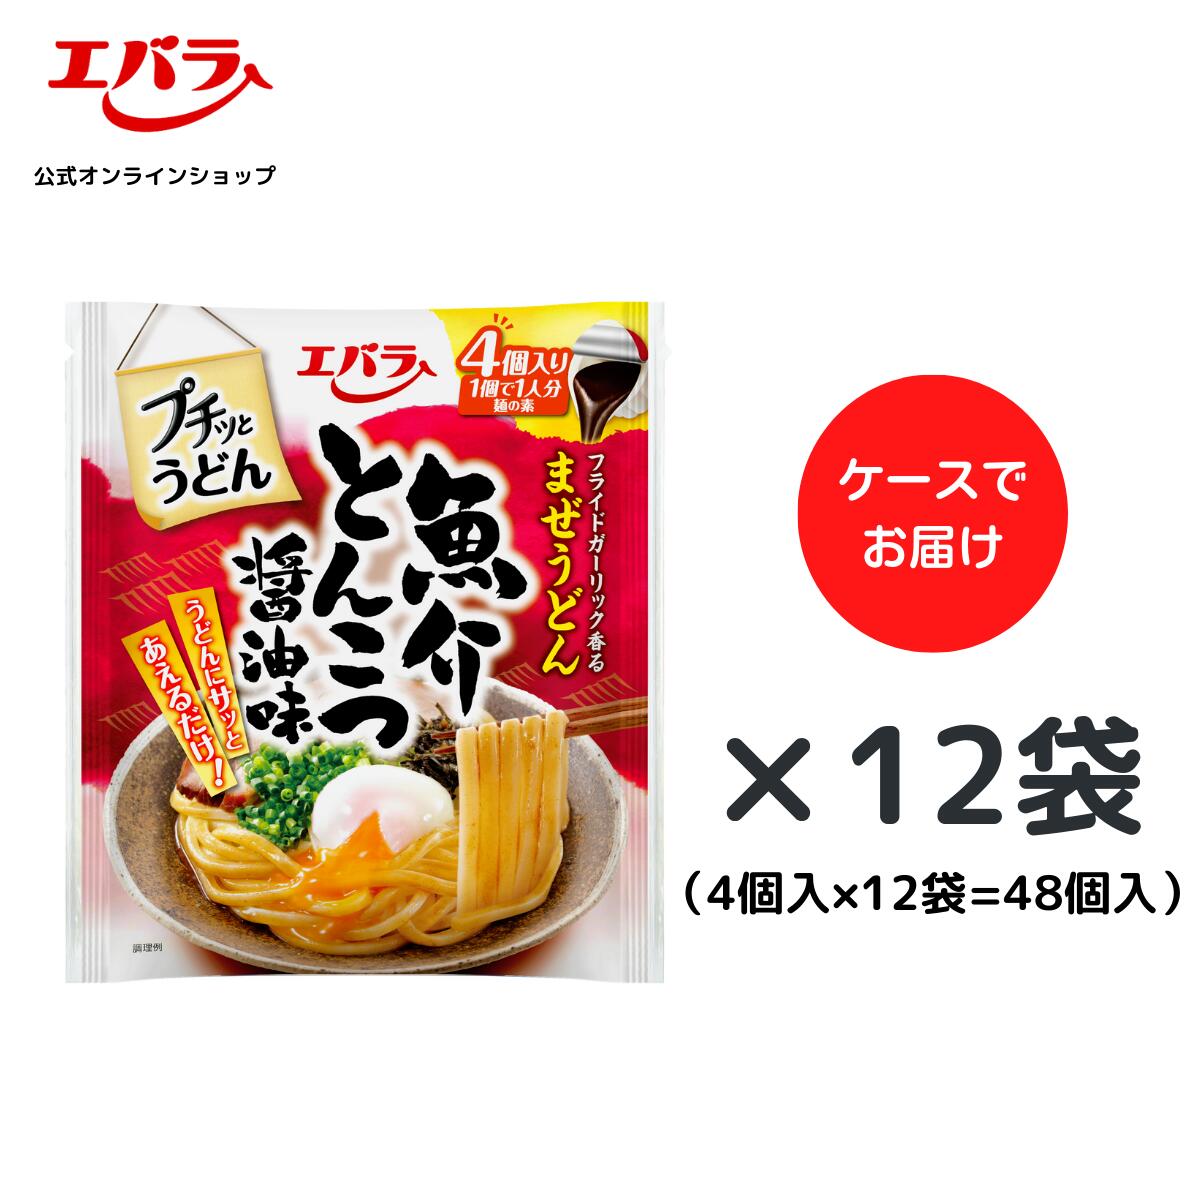 【楽天市場】プチッとうどん 魚介とんこつ醤油味 88g(22g×4個 